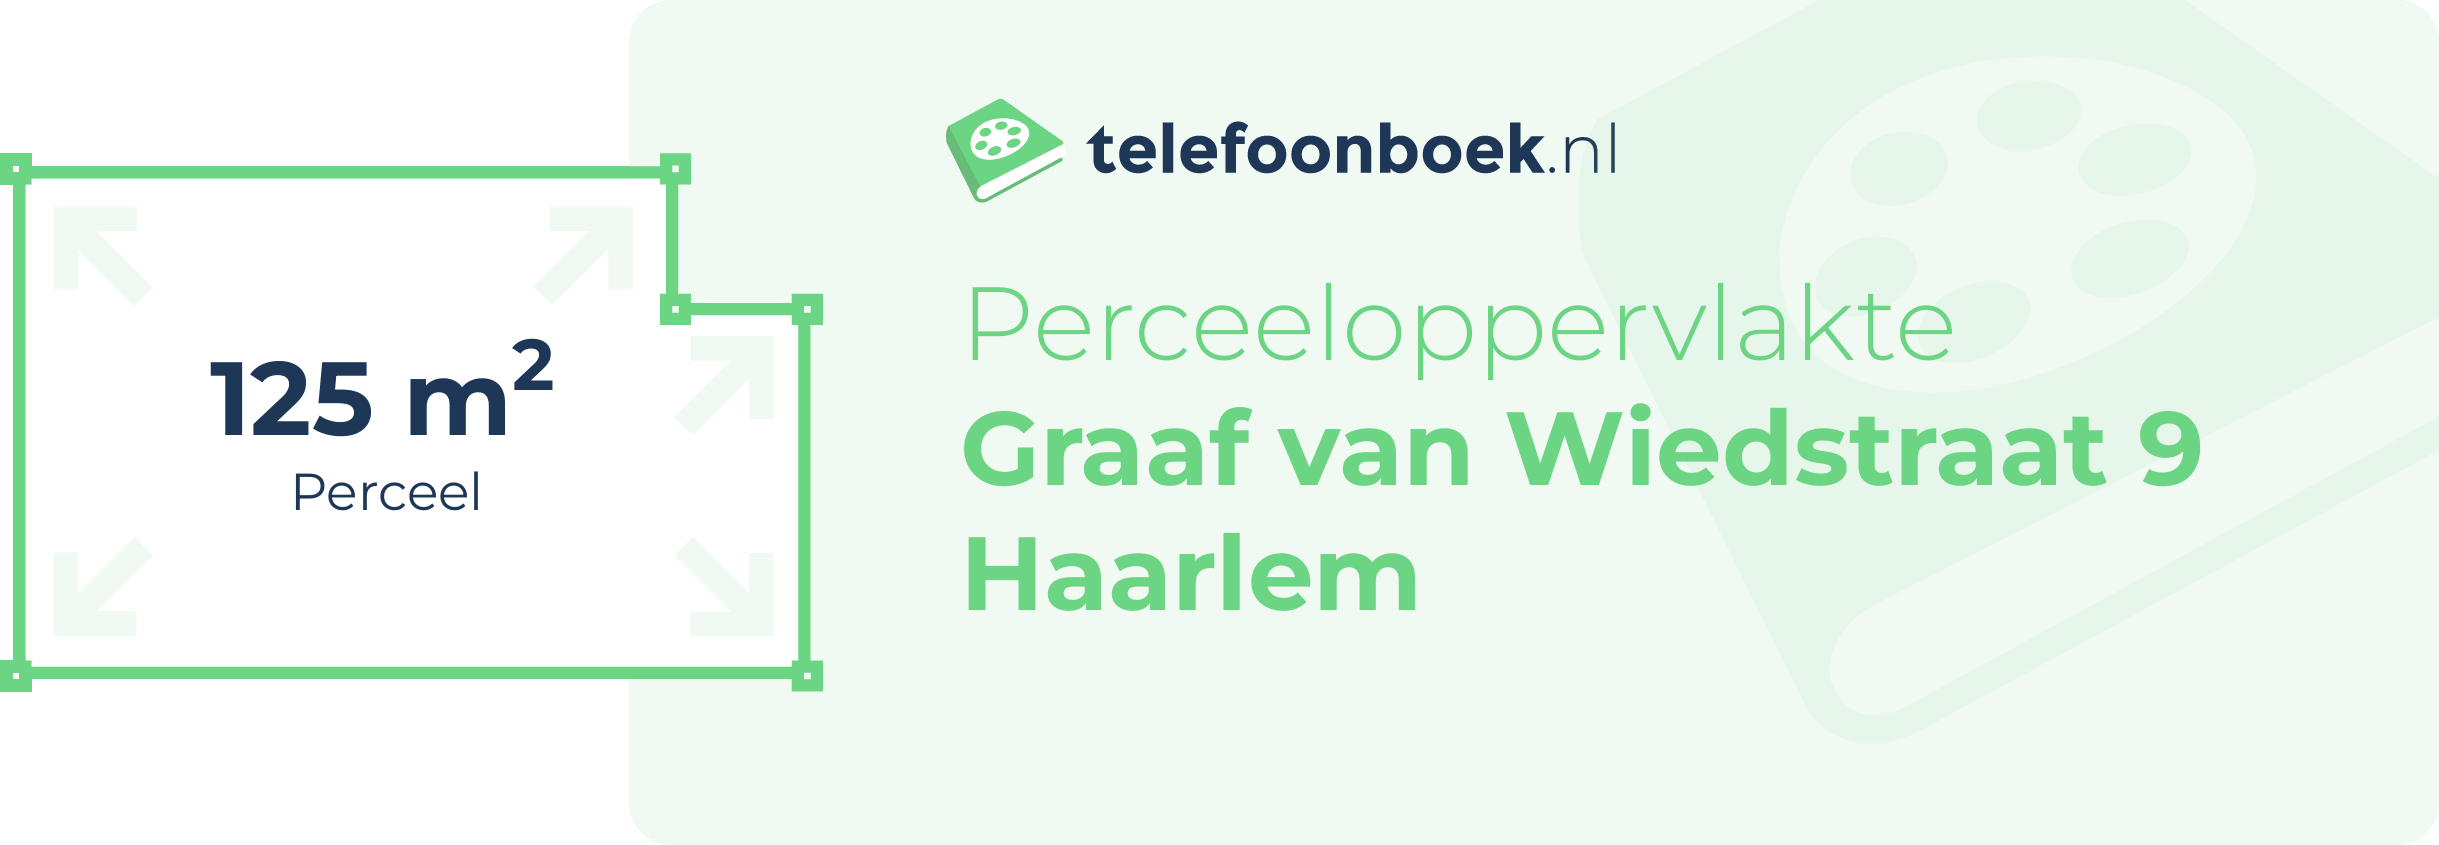 Perceeloppervlakte Graaf Van Wiedstraat 9 Haarlem